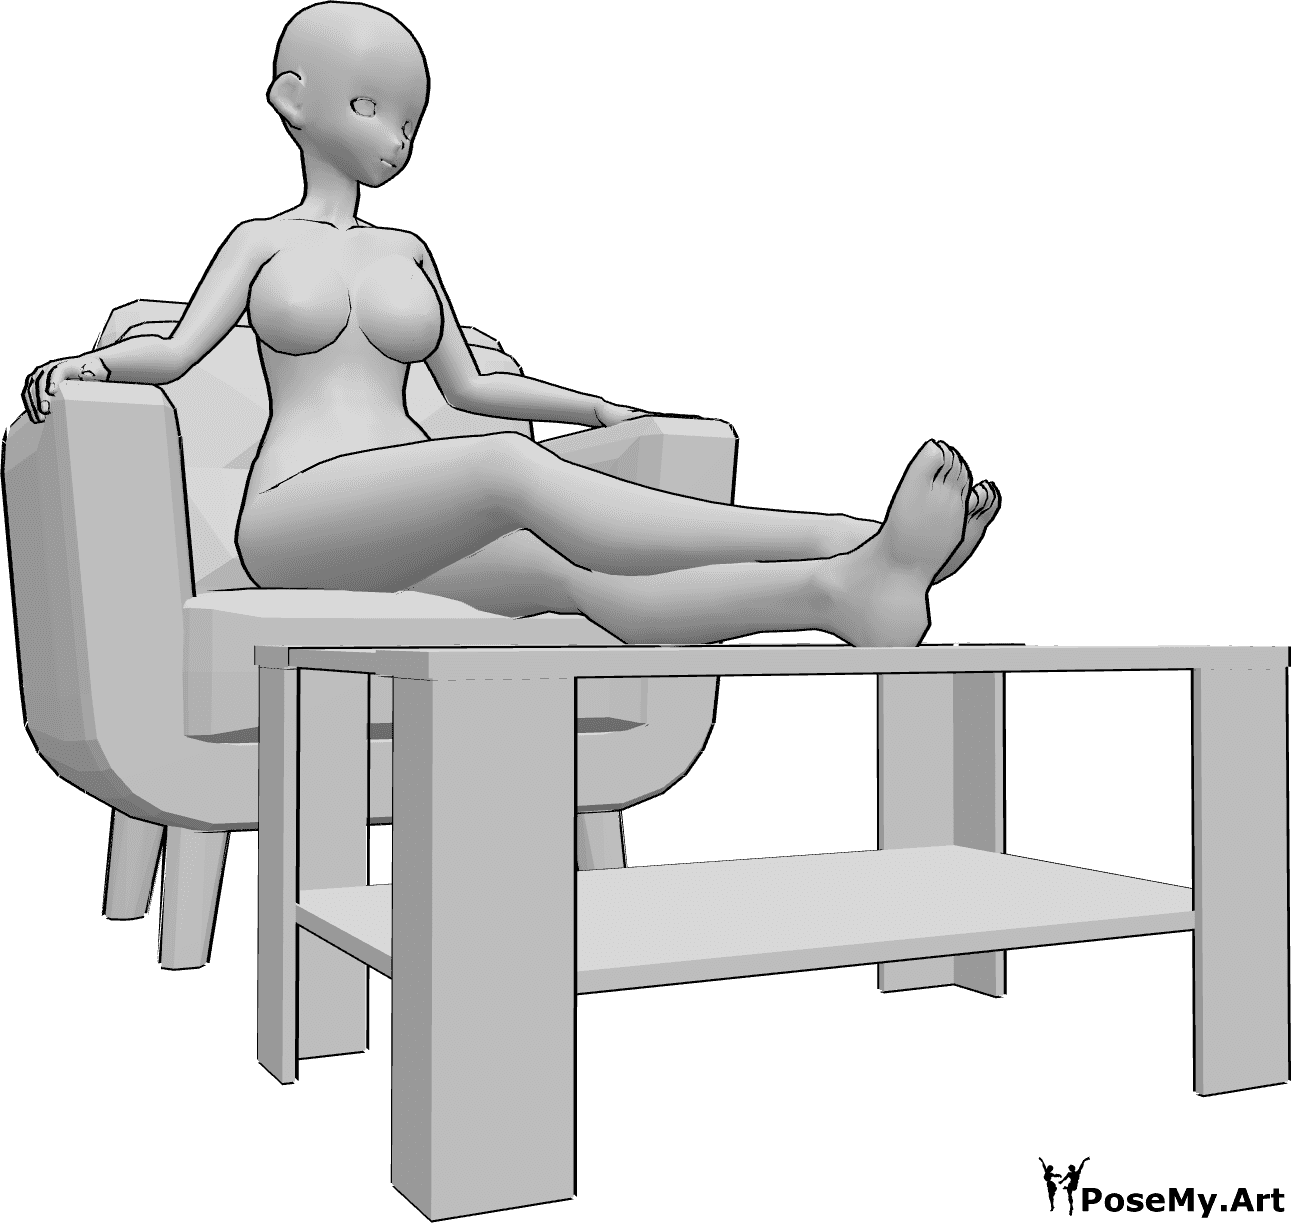 Référence des poses- Pose de l'anime avec les jambes au repos - Une femme animée est assise dans un fauteuil et repose ses jambes sur une petite table.